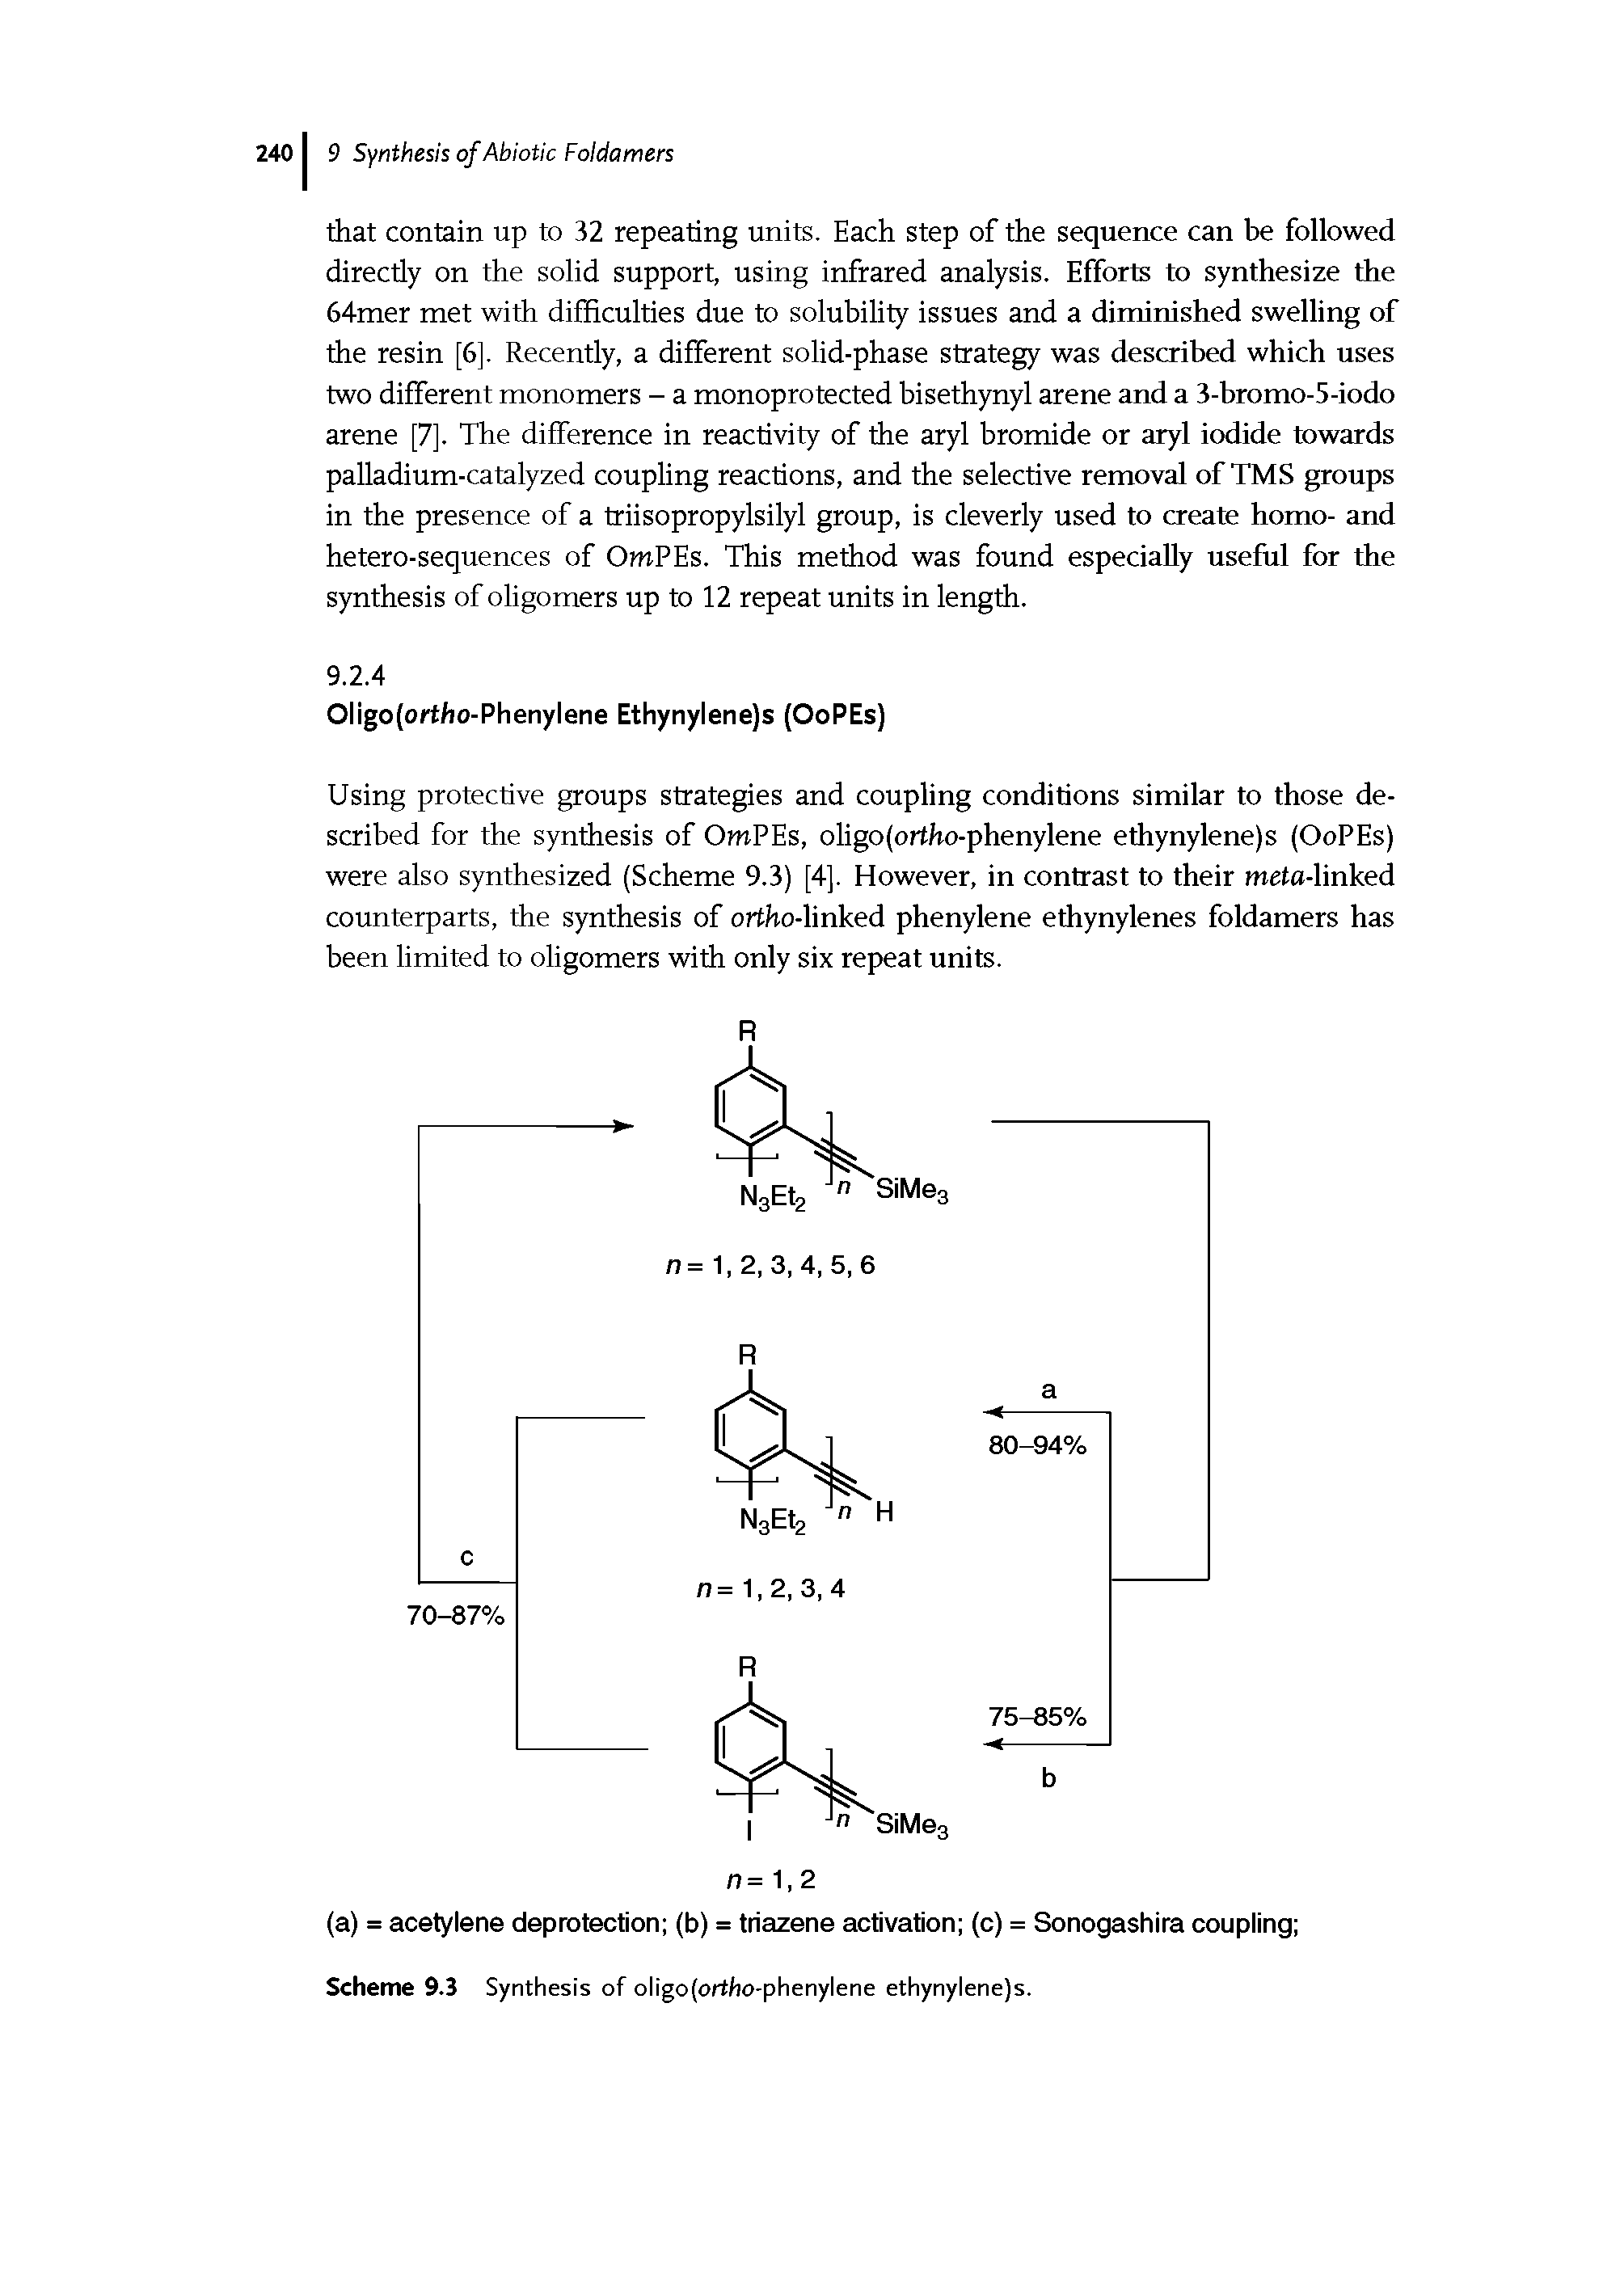 Scheme 9.3 Synthesis of oligo(ortho-phenylene ethynylene)s.